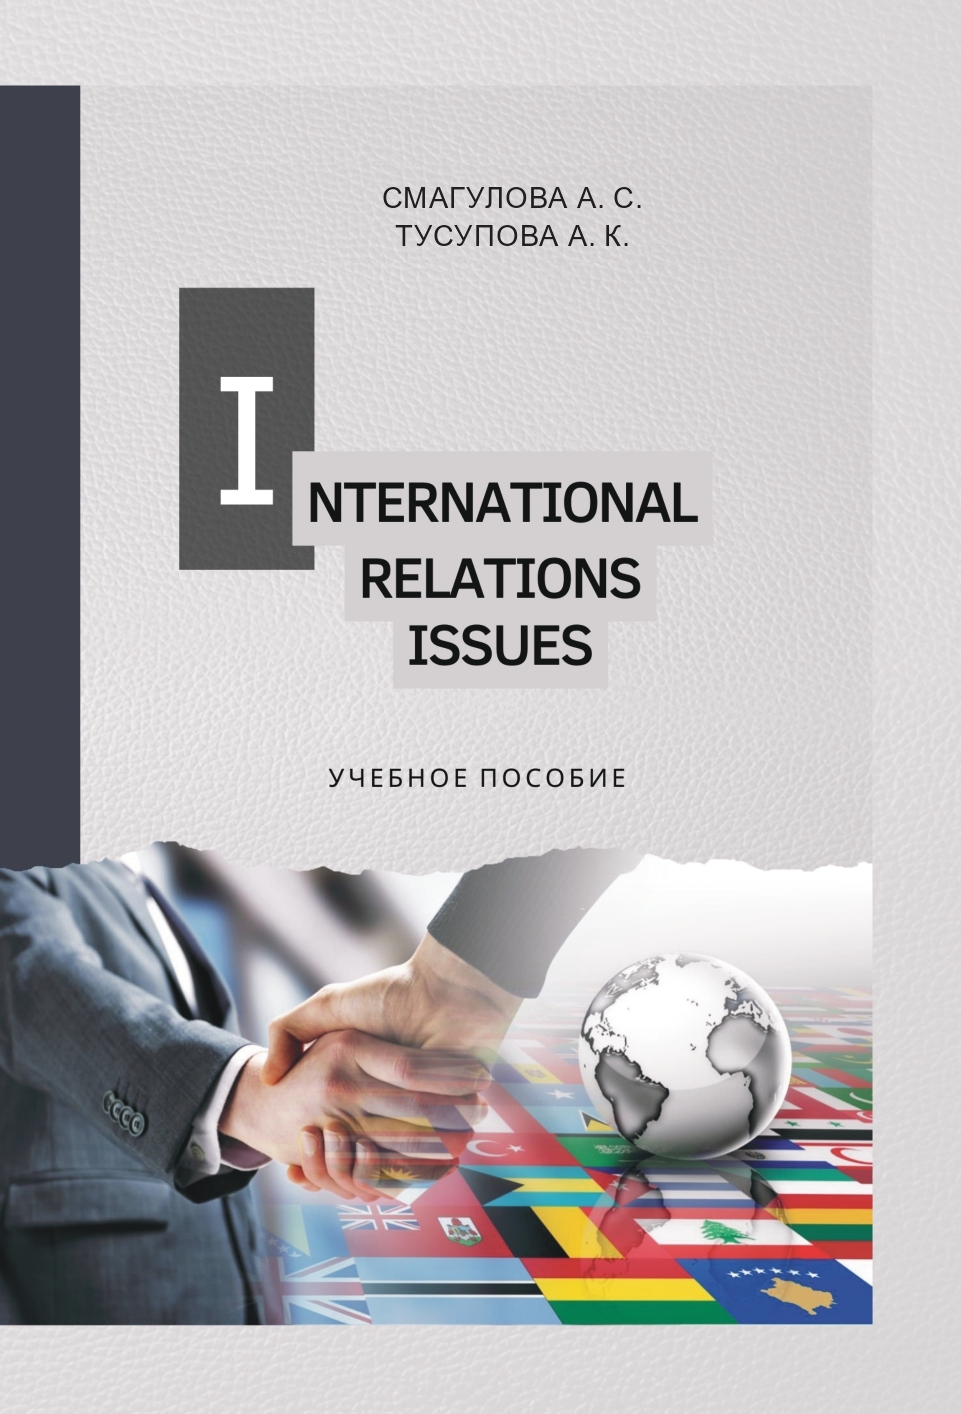 International Relations Issues
Учебное пособие по английскому языку для студентов-международников